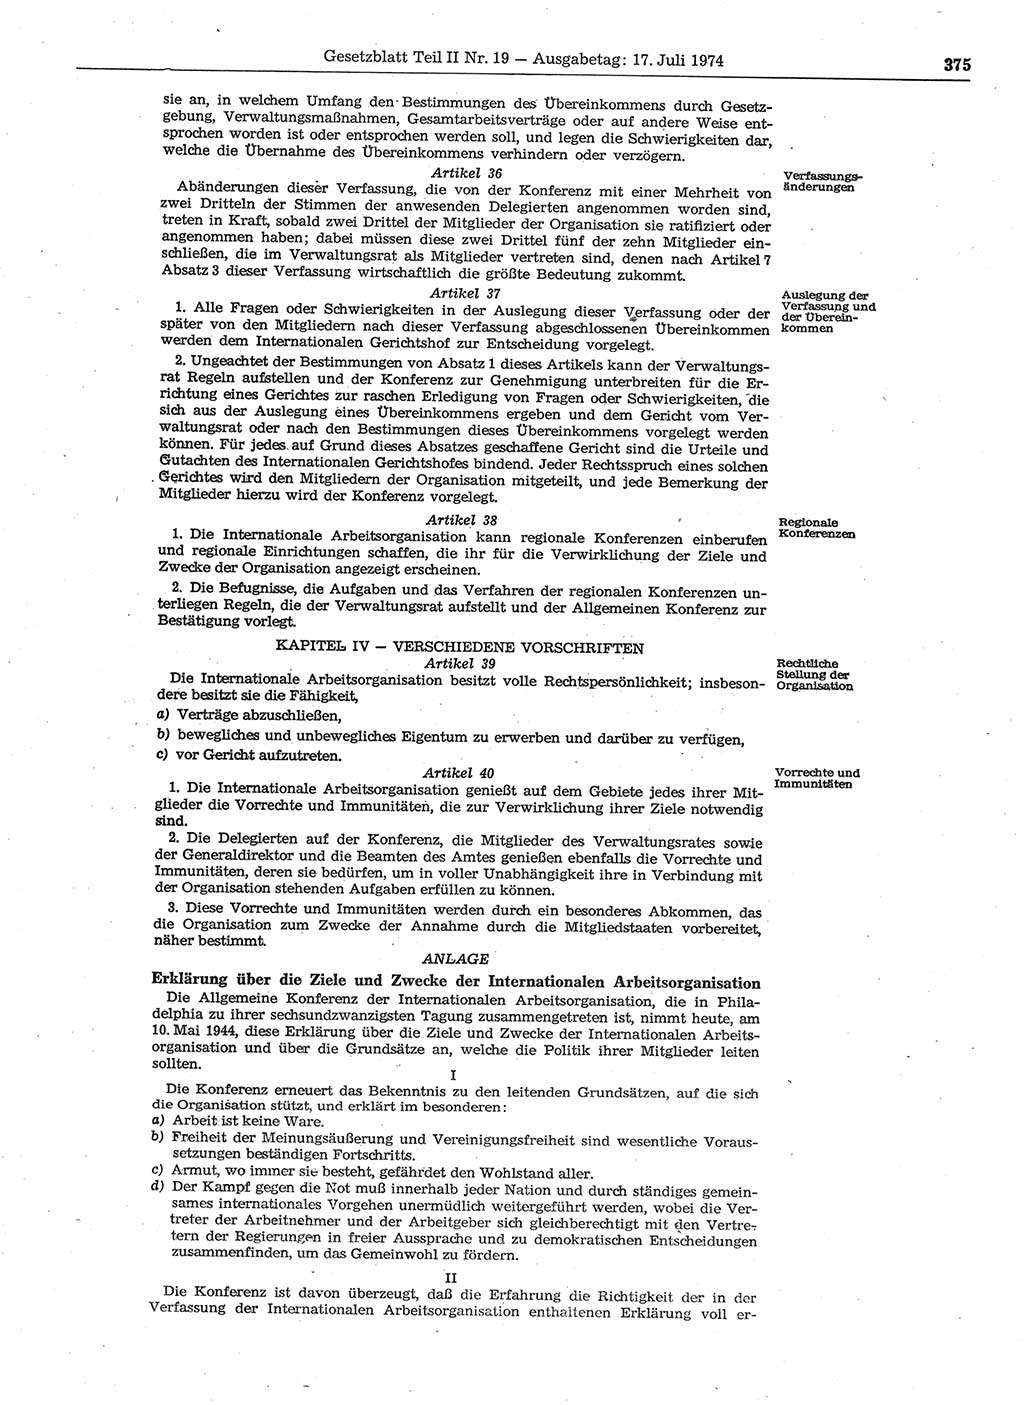 Gesetzblatt (GBl.) der Deutschen Demokratischen Republik (DDR) Teil ⅠⅠ 1974, Seite 375 (GBl. DDR ⅠⅠ 1974, S. 375)